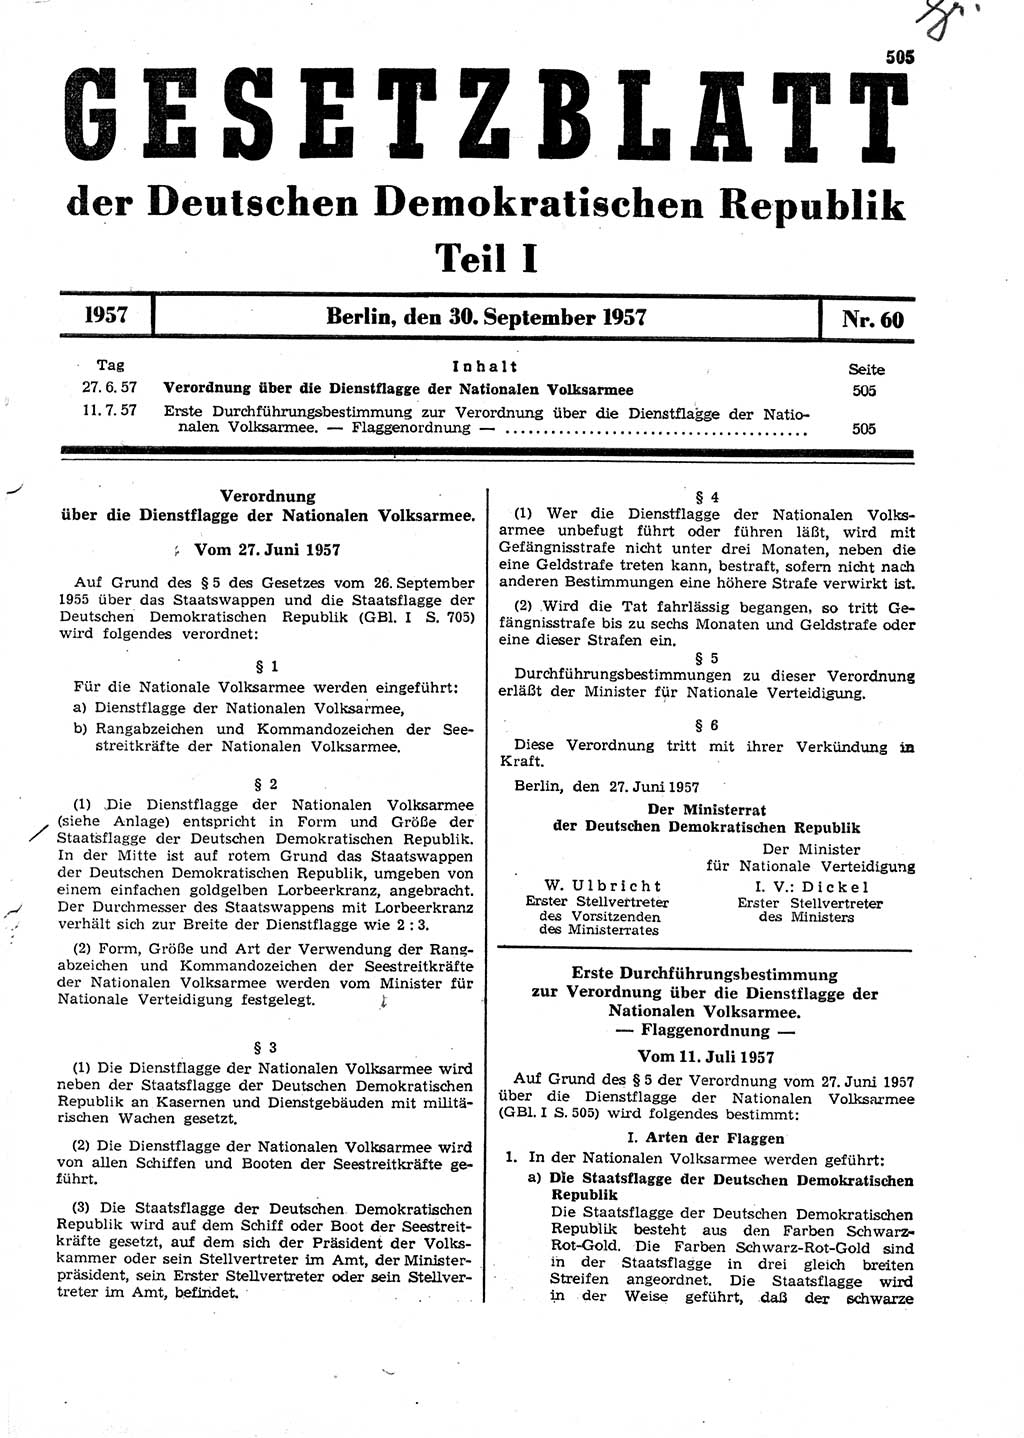 Gesetzblatt (GBl.) der Deutschen Demokratischen Republik (DDR) Teil Ⅰ 1957, Seite 505 (GBl. DDR Ⅰ 1957, S. 505)